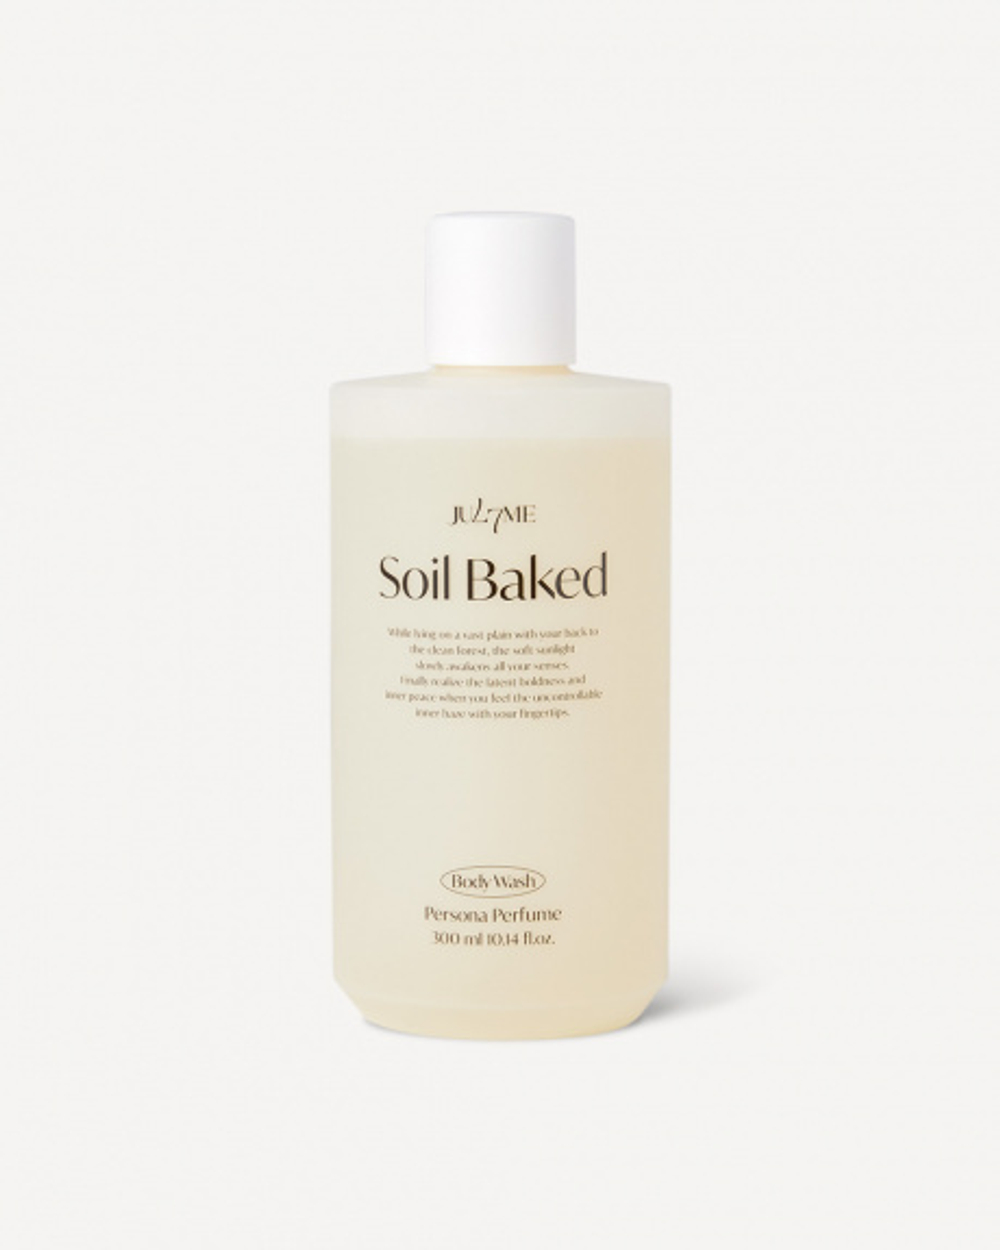 JUL7ME Perfume Body Wash Soil Baked парфюмированный гель для душа с древесно-цитрусовым ароматом